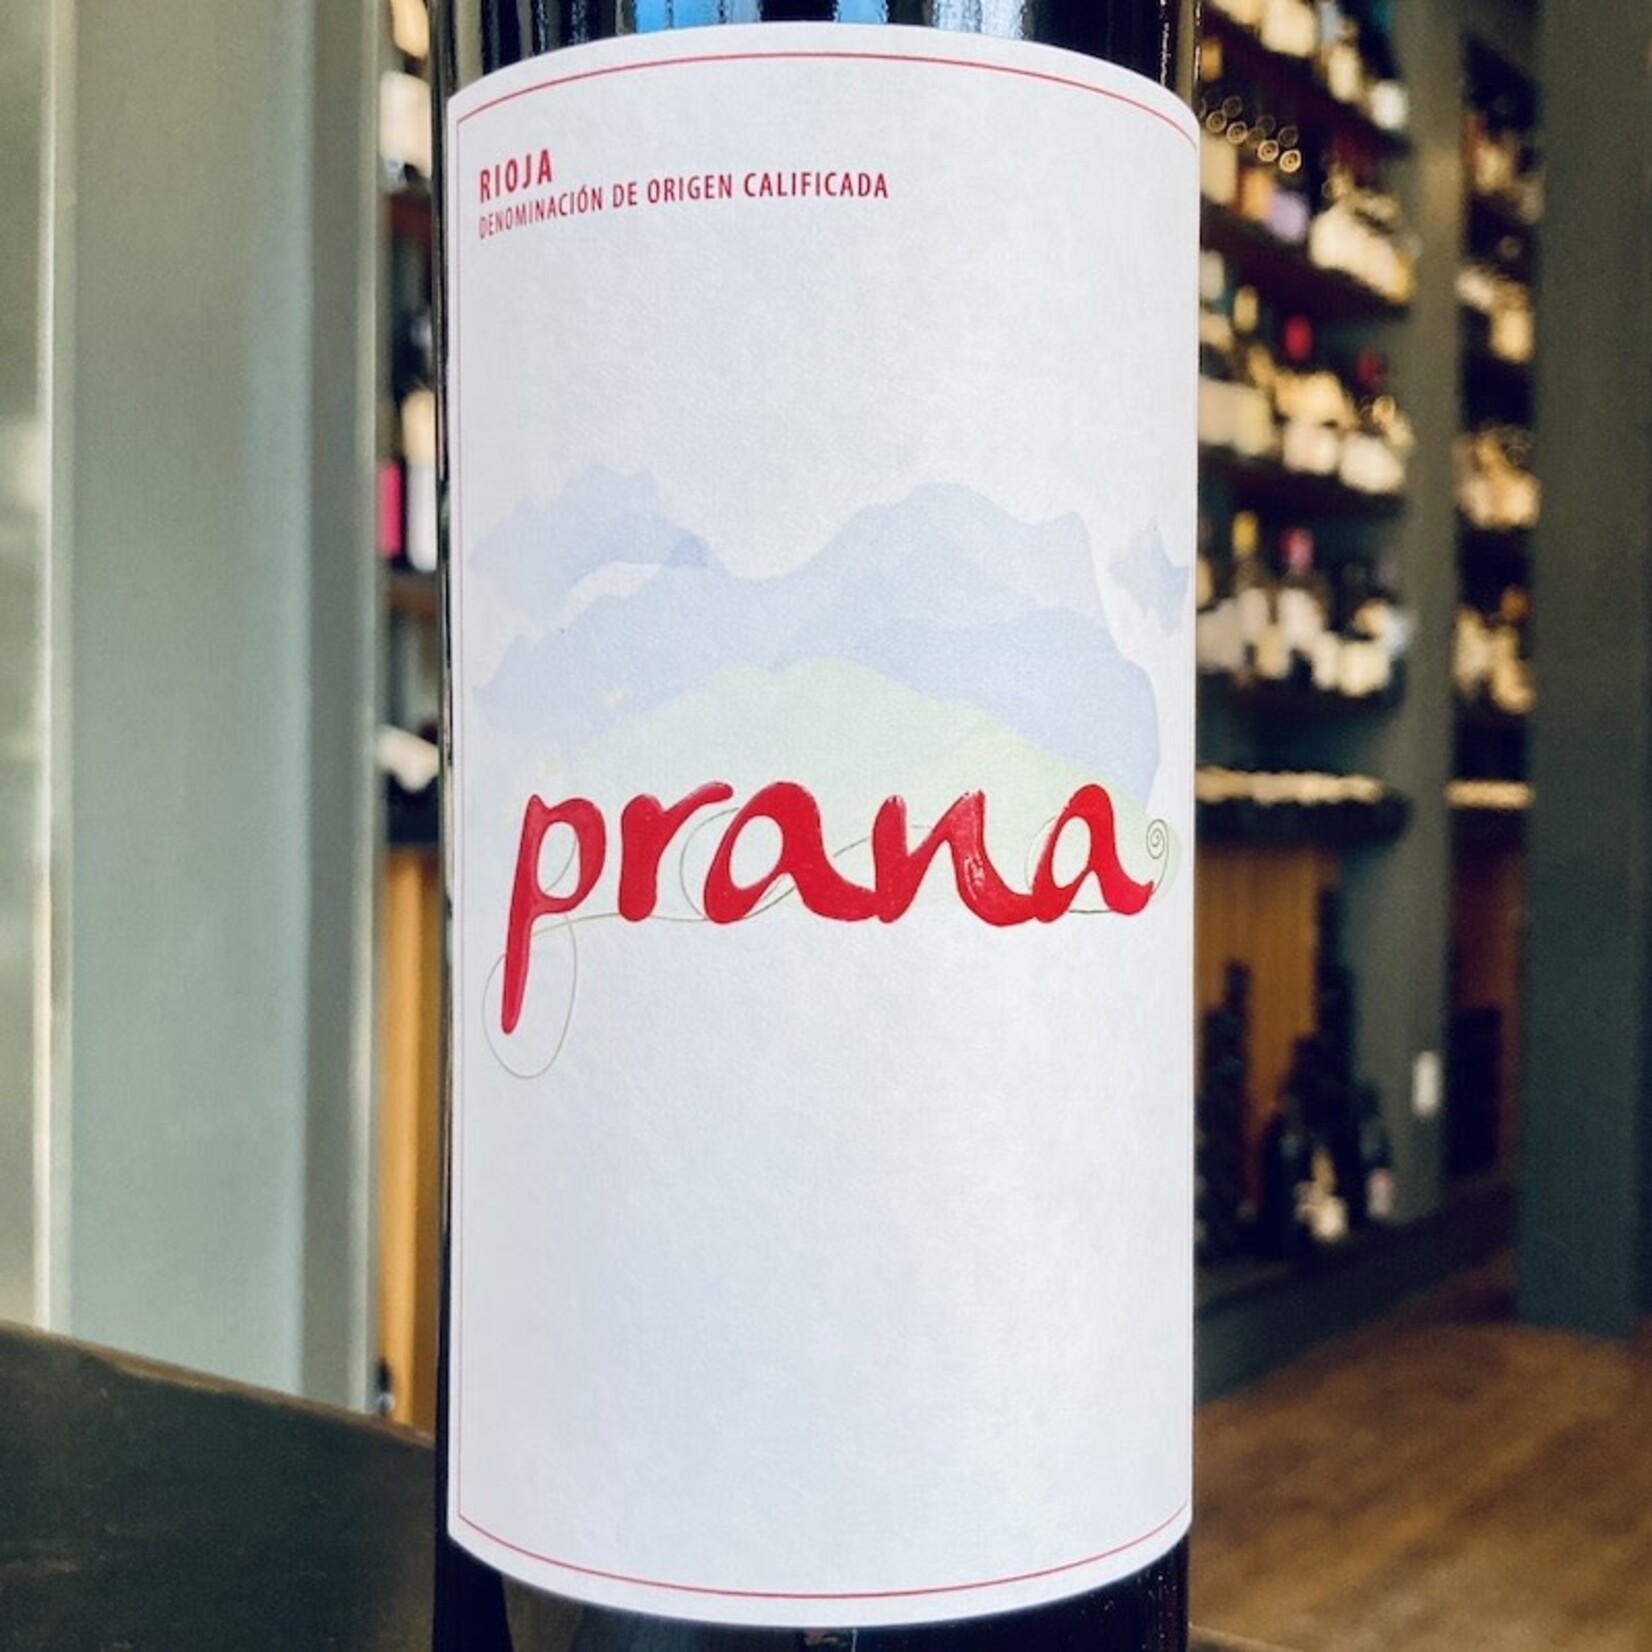 Spain 2021 Viña Ilusion Rioja "Prana"